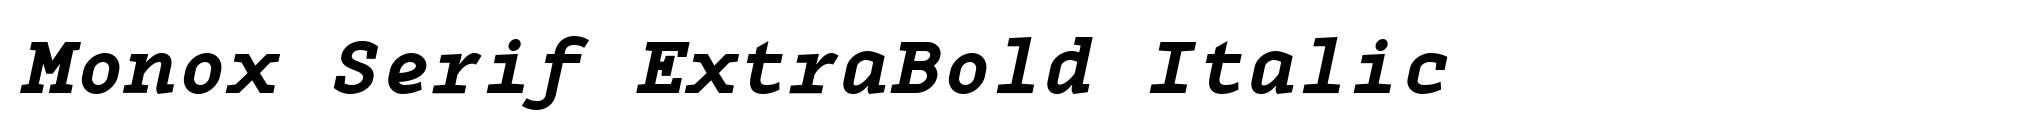 Monox Serif ExtraBold Italic image